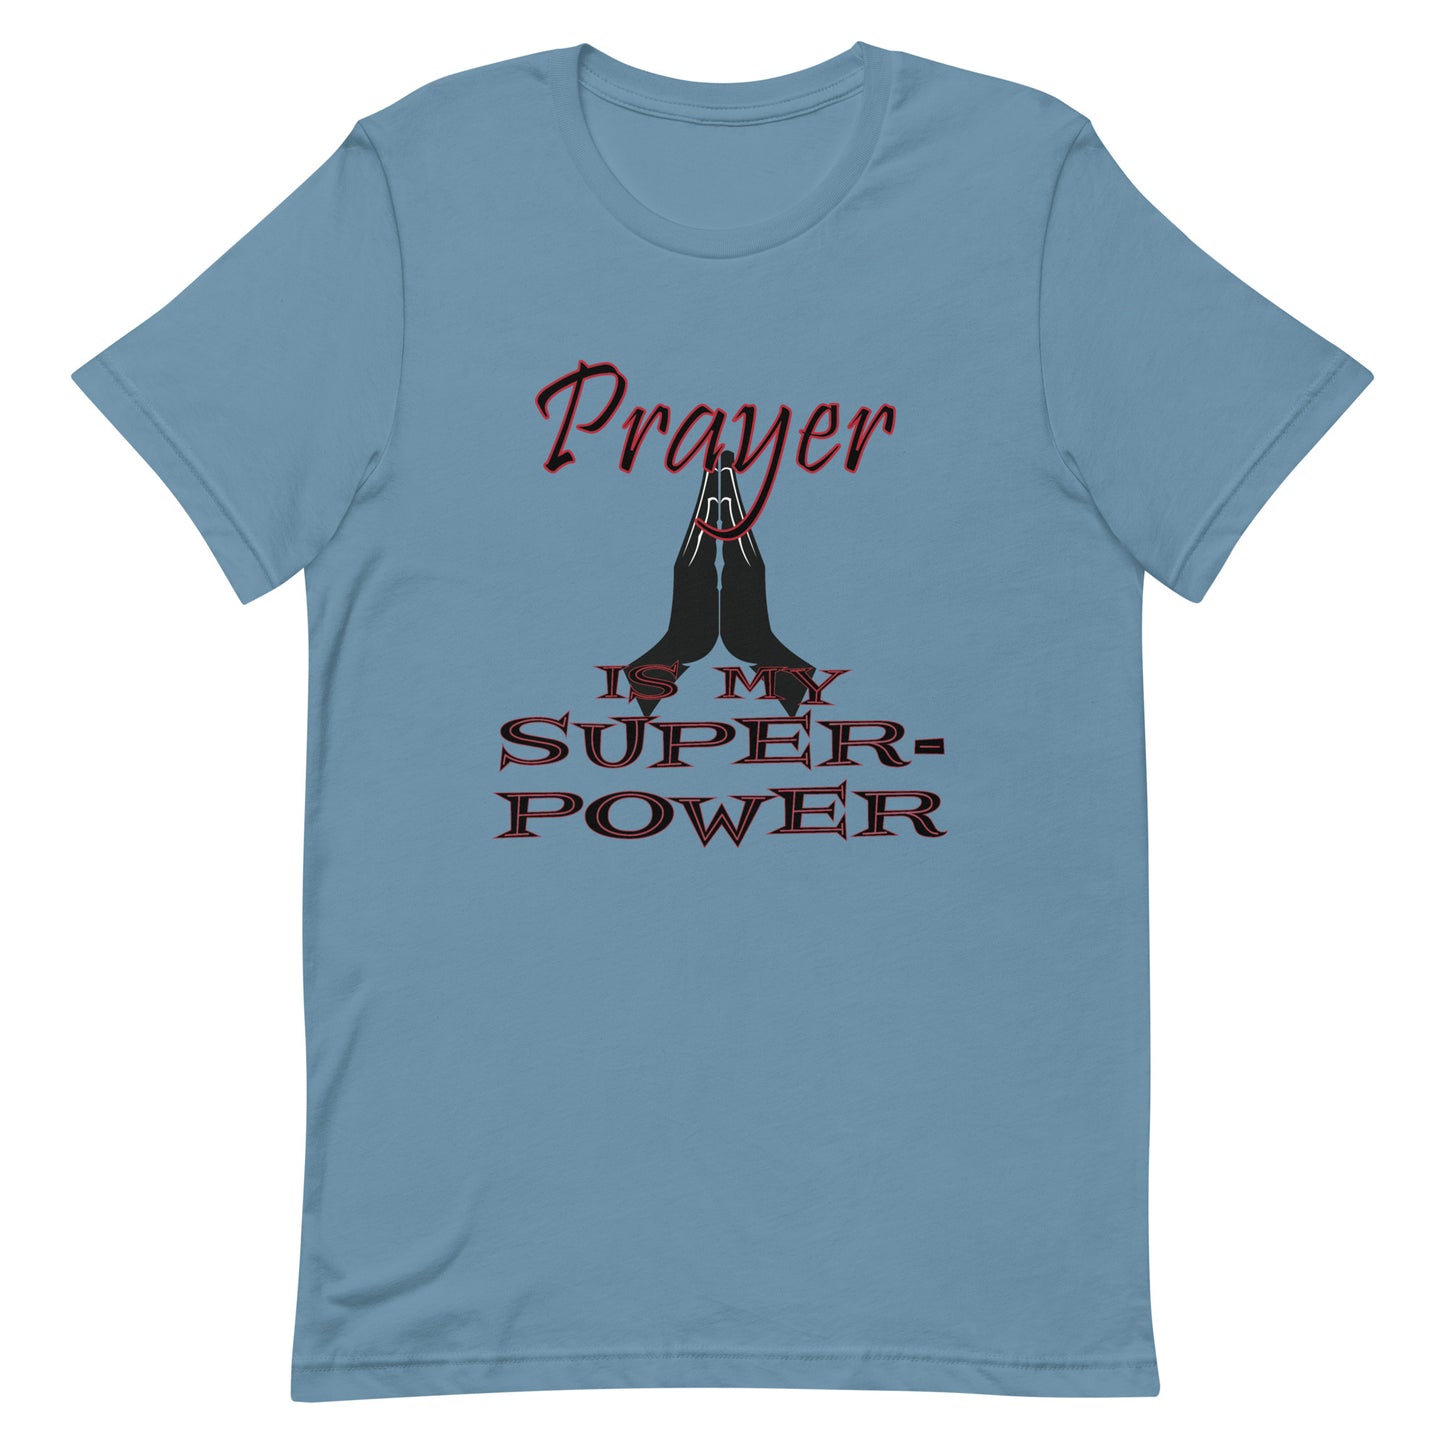 Prayer is my Super-power t-shirt